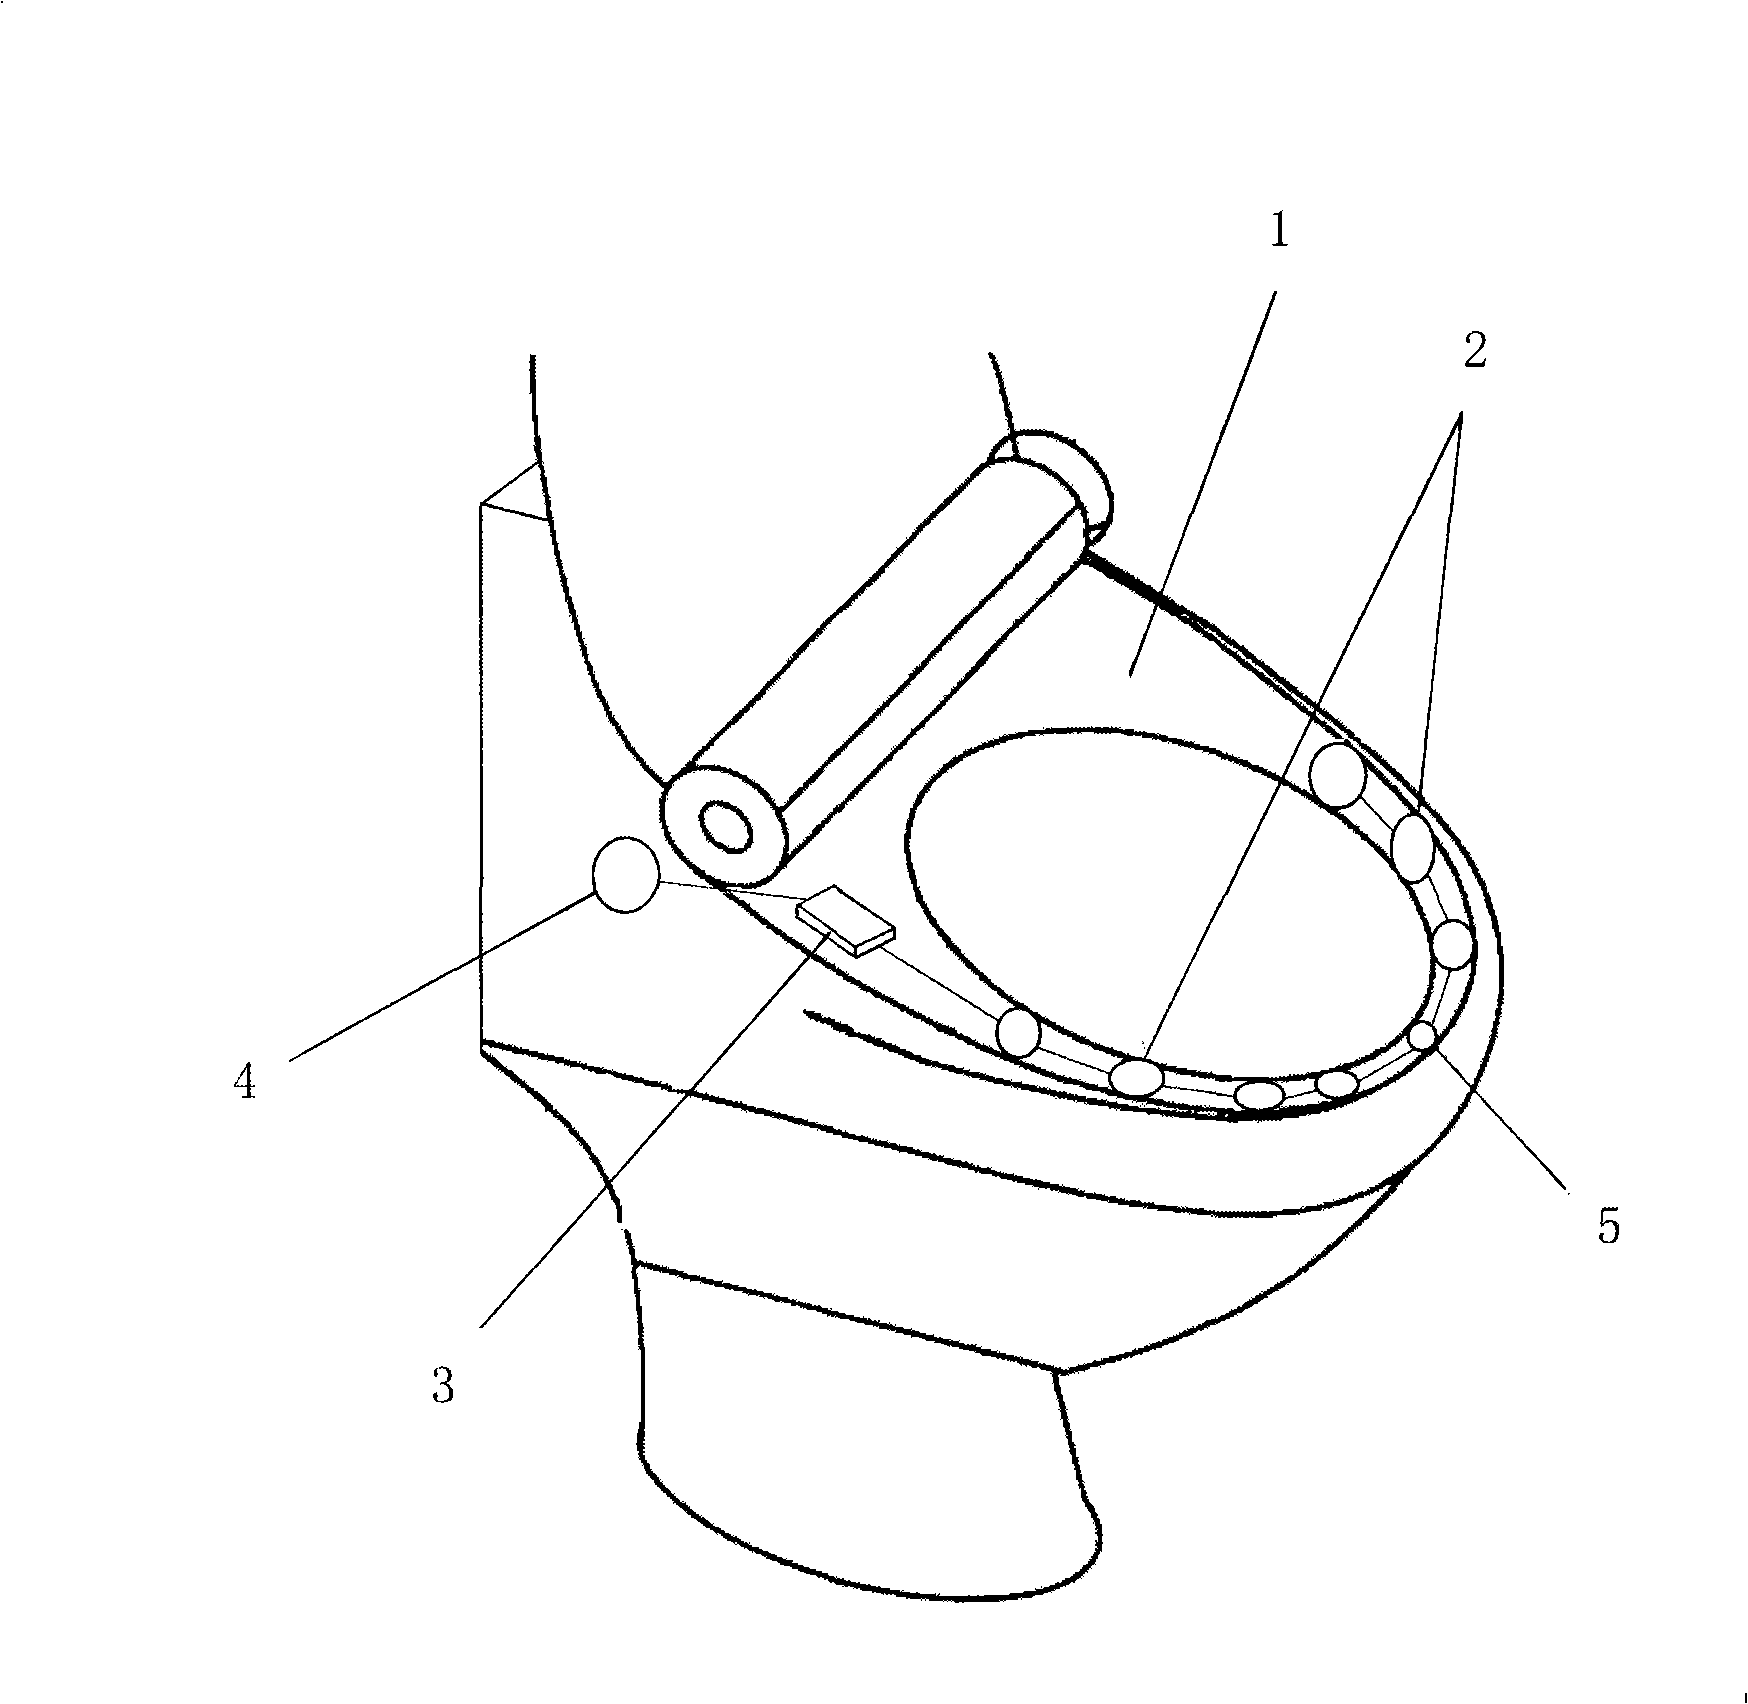 Induction type automatic flushing toilet